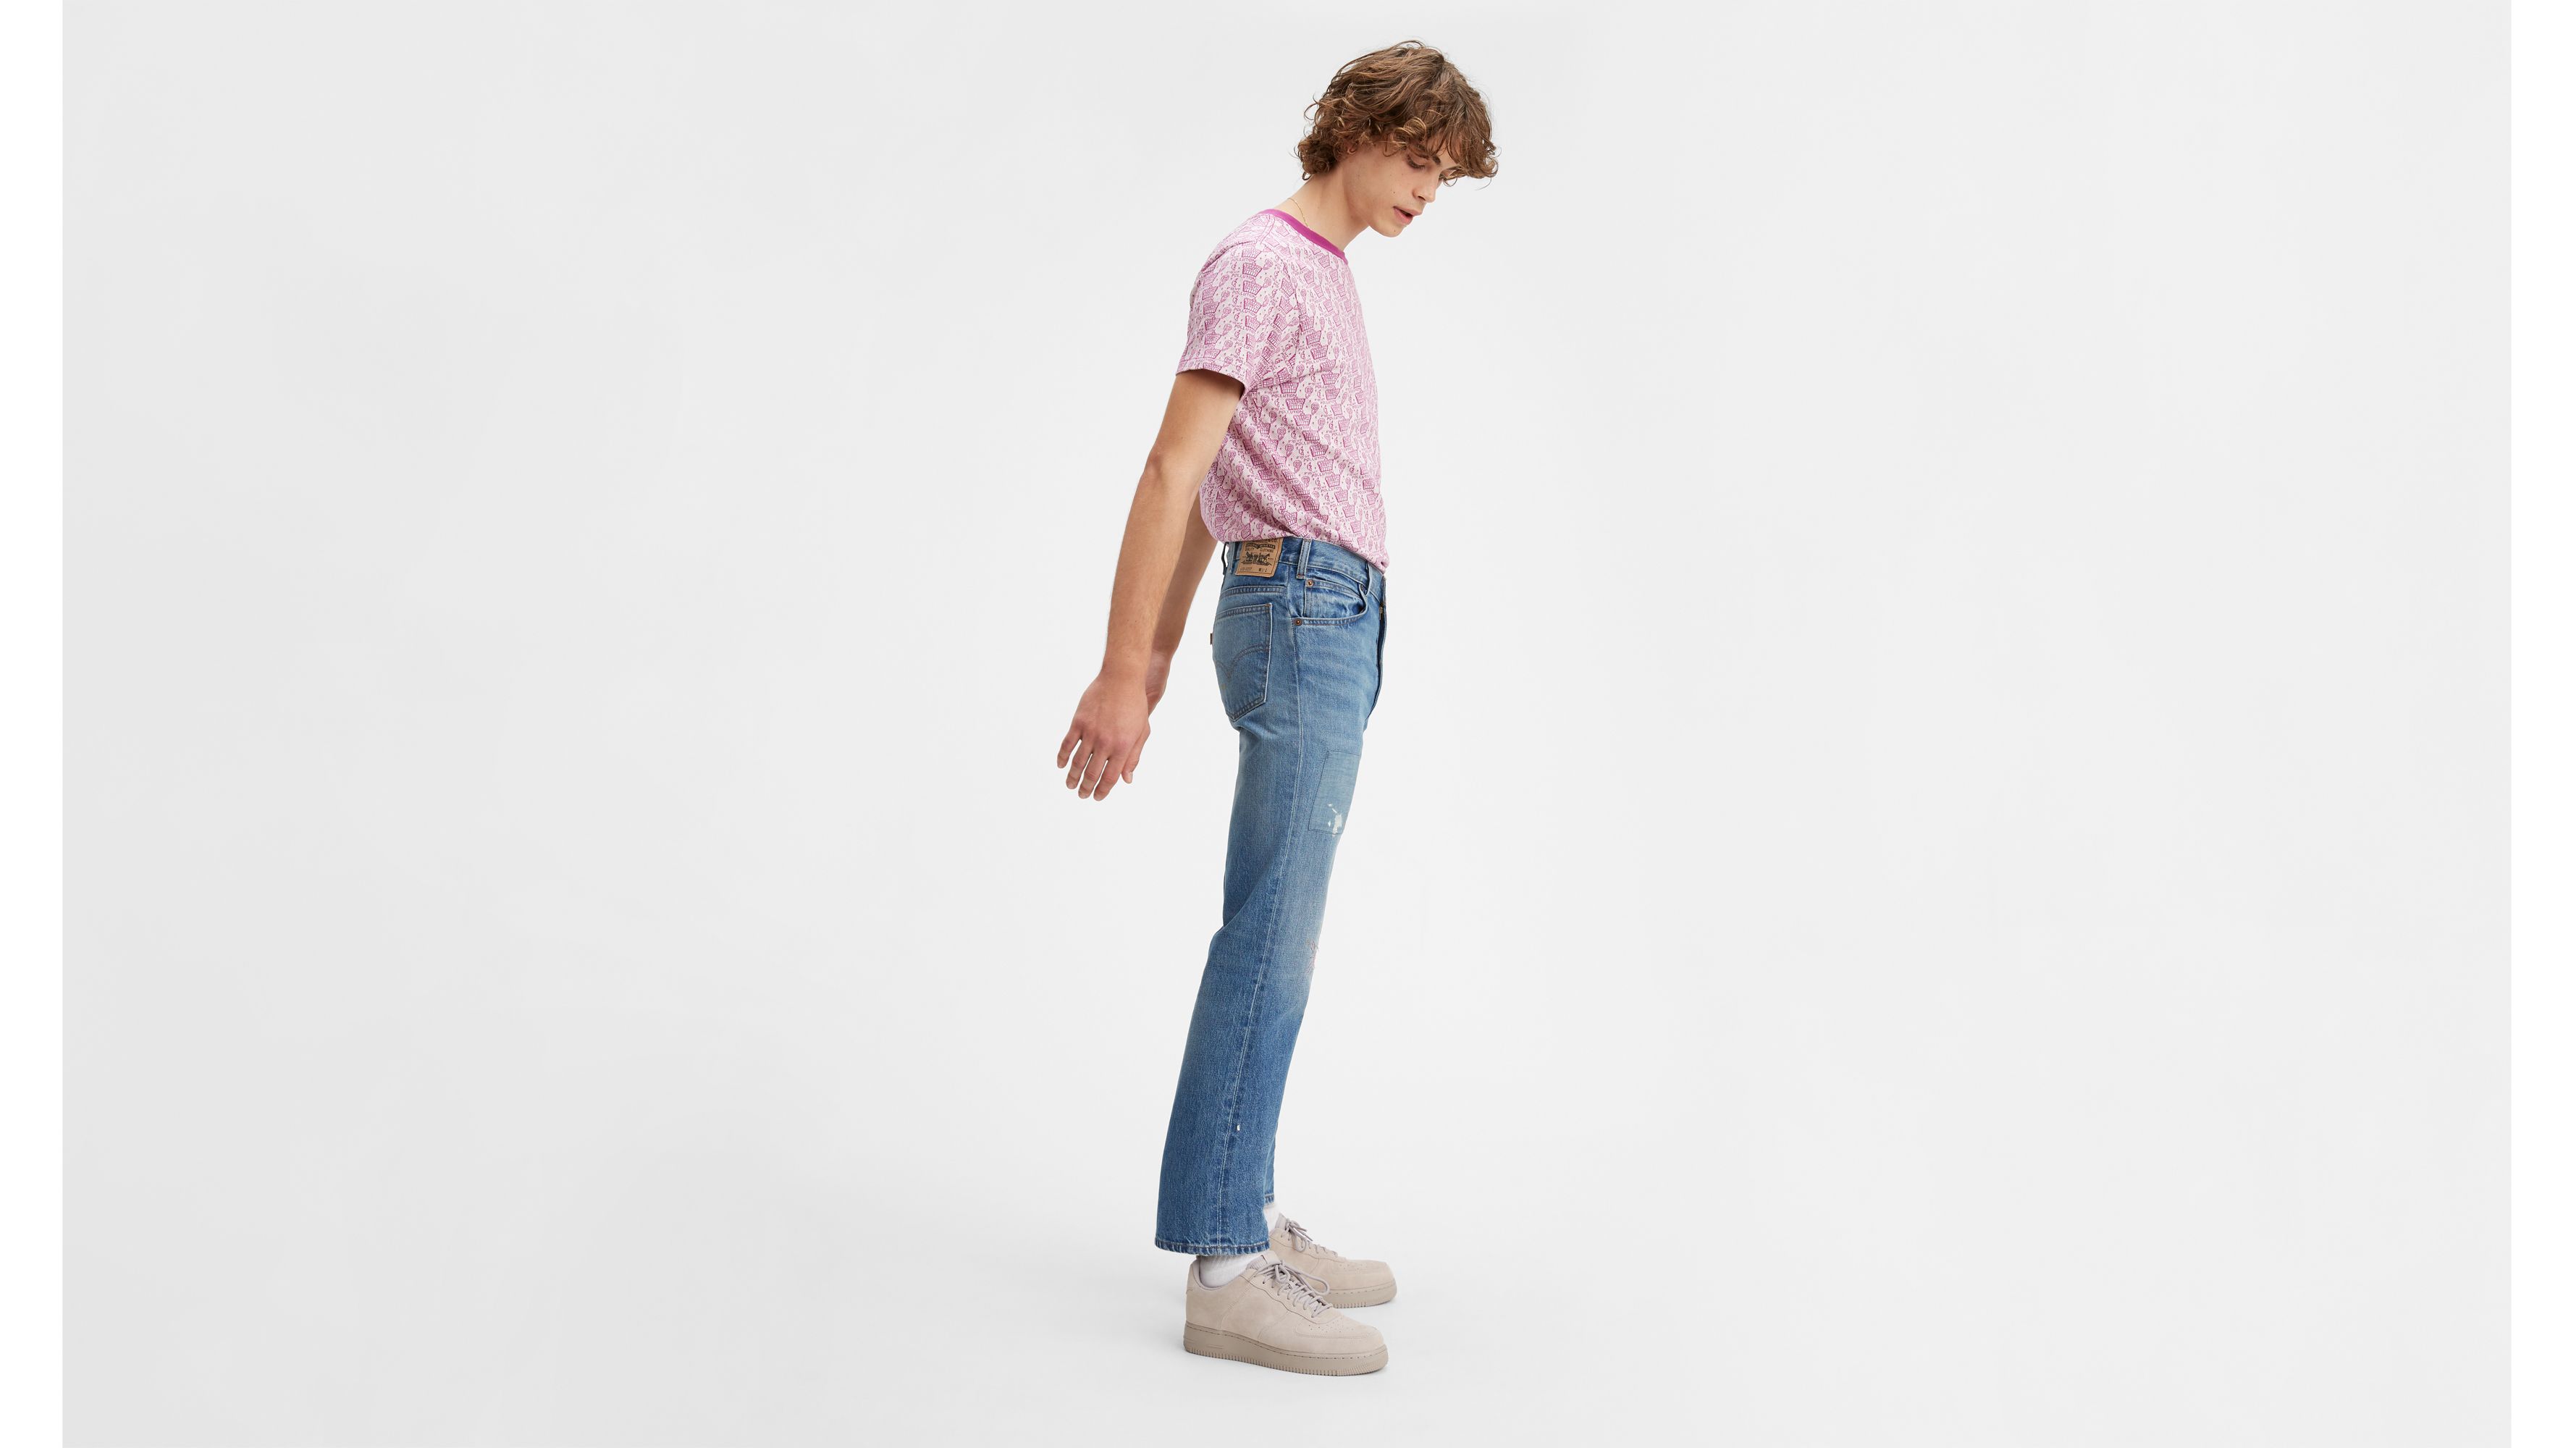 levis 630 jeans